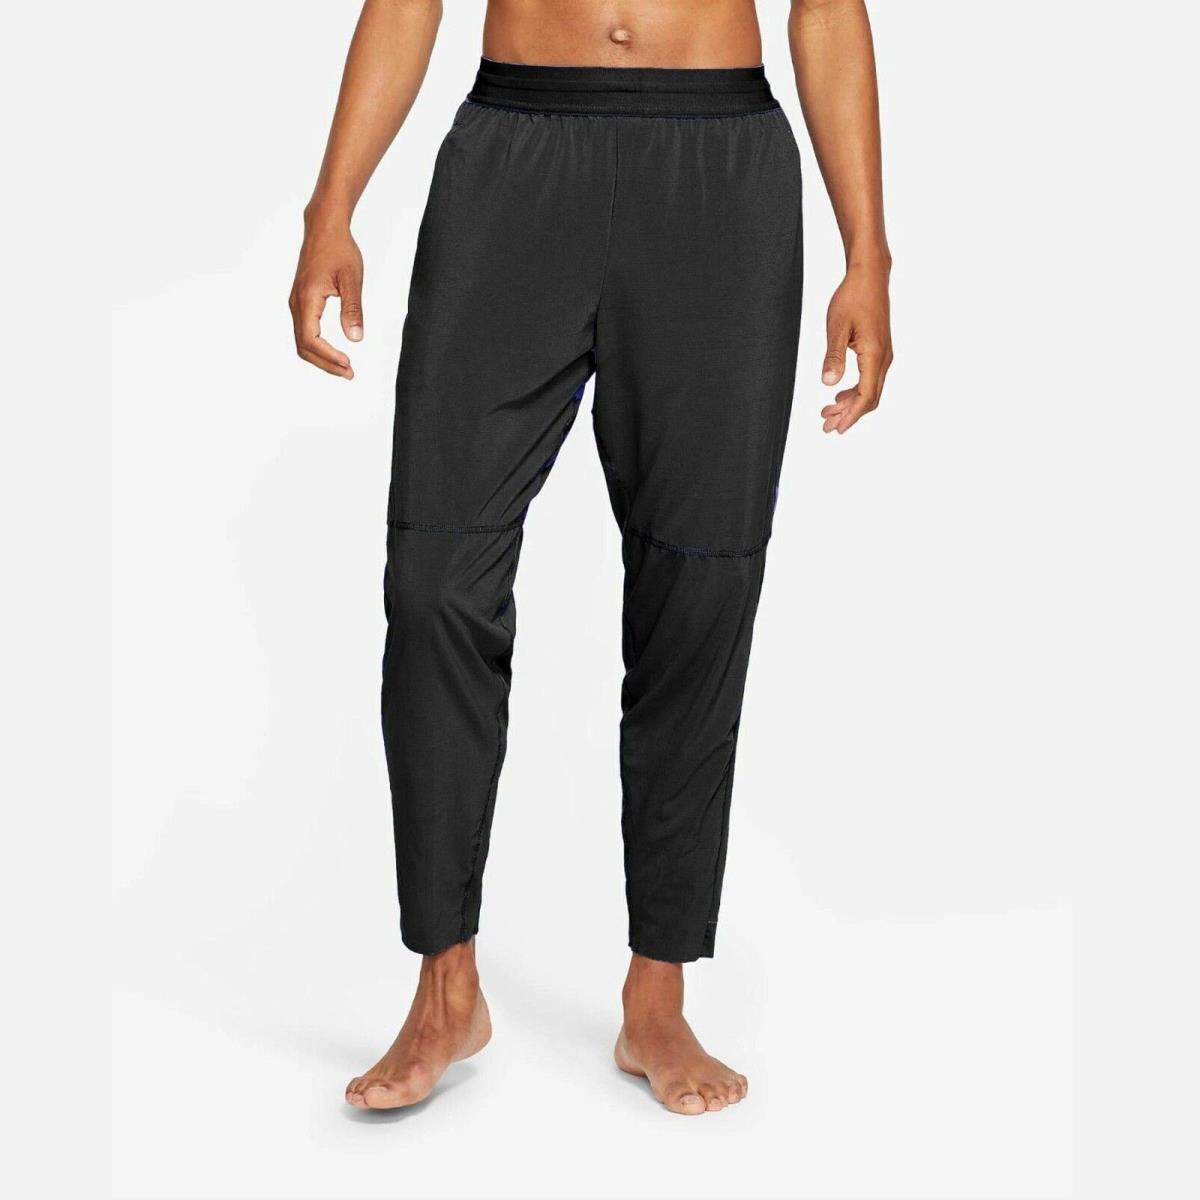 Nike Men s Training Yoga Pants Size M Black CU7378-010